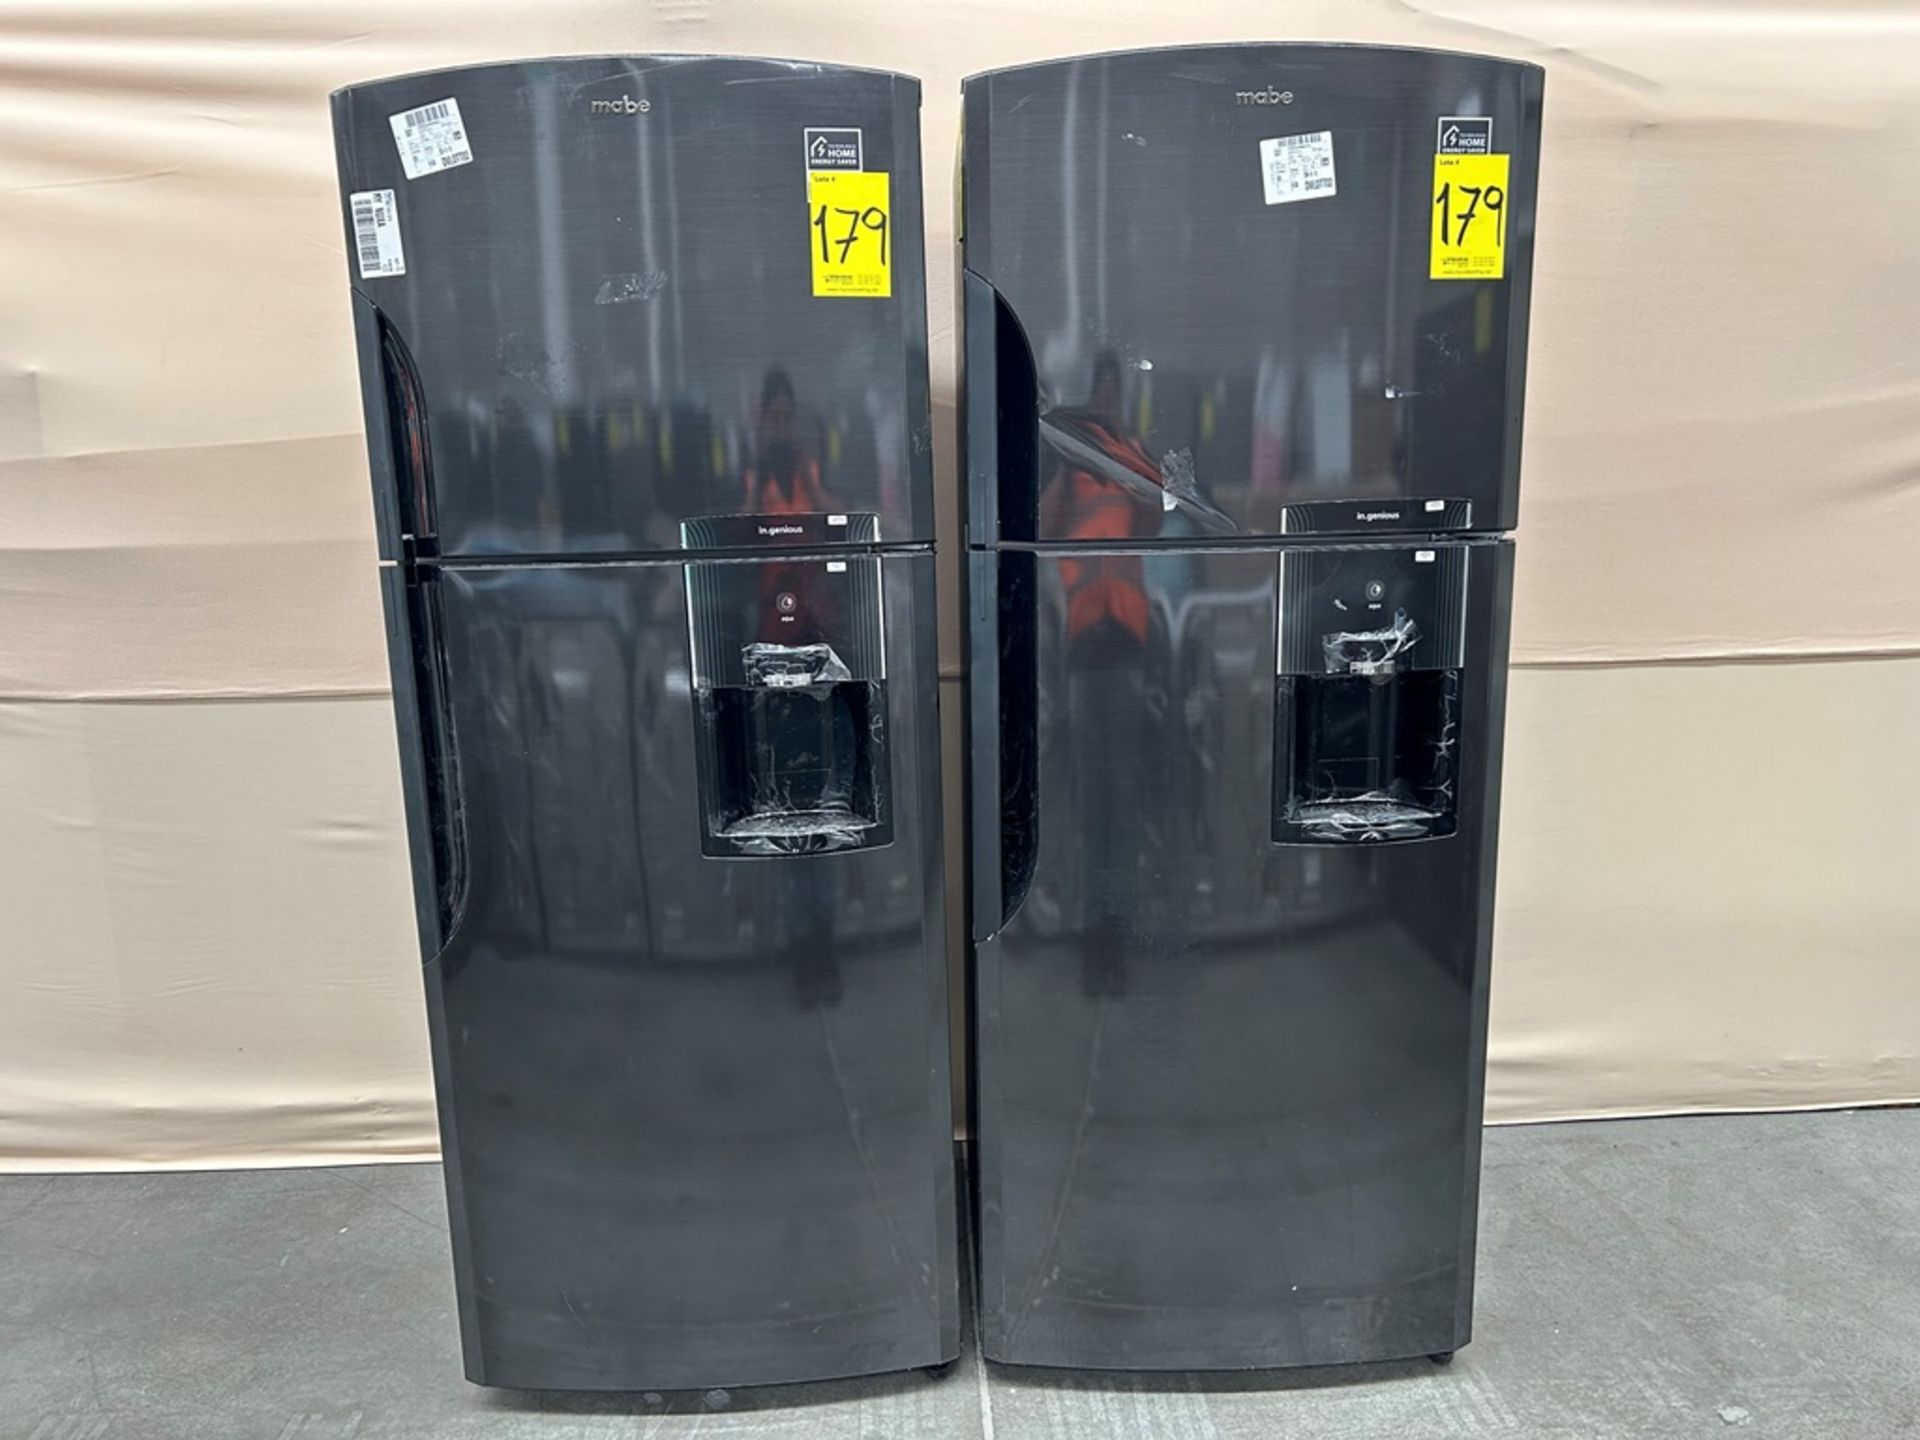 Lote de 2 refrigeradores contiene: Refrigerador con dispensador de agua Marca MABE, Modelo RMS510IA